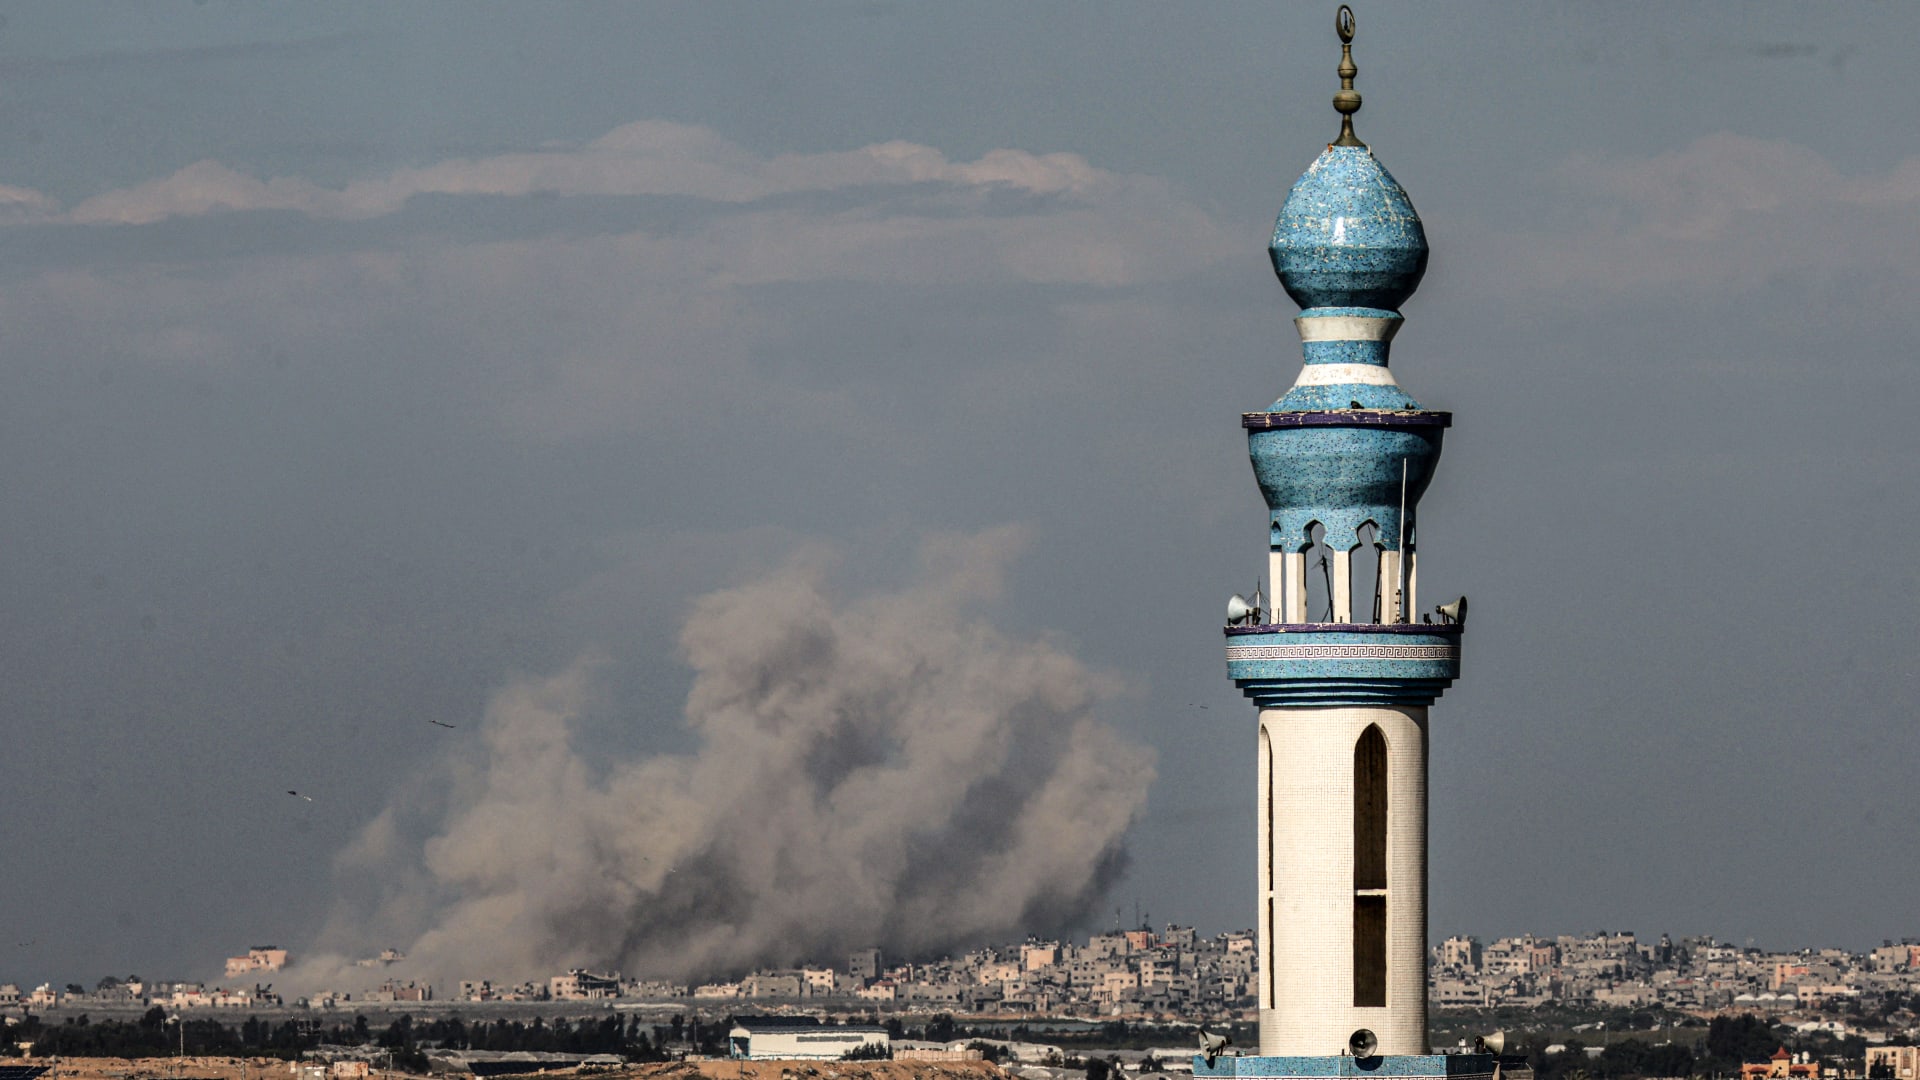 حماس ترد باقتراح على صفقة الرهائن.. وبايدن يصفه بأنه "مبالغ فيه بعض الشيء"